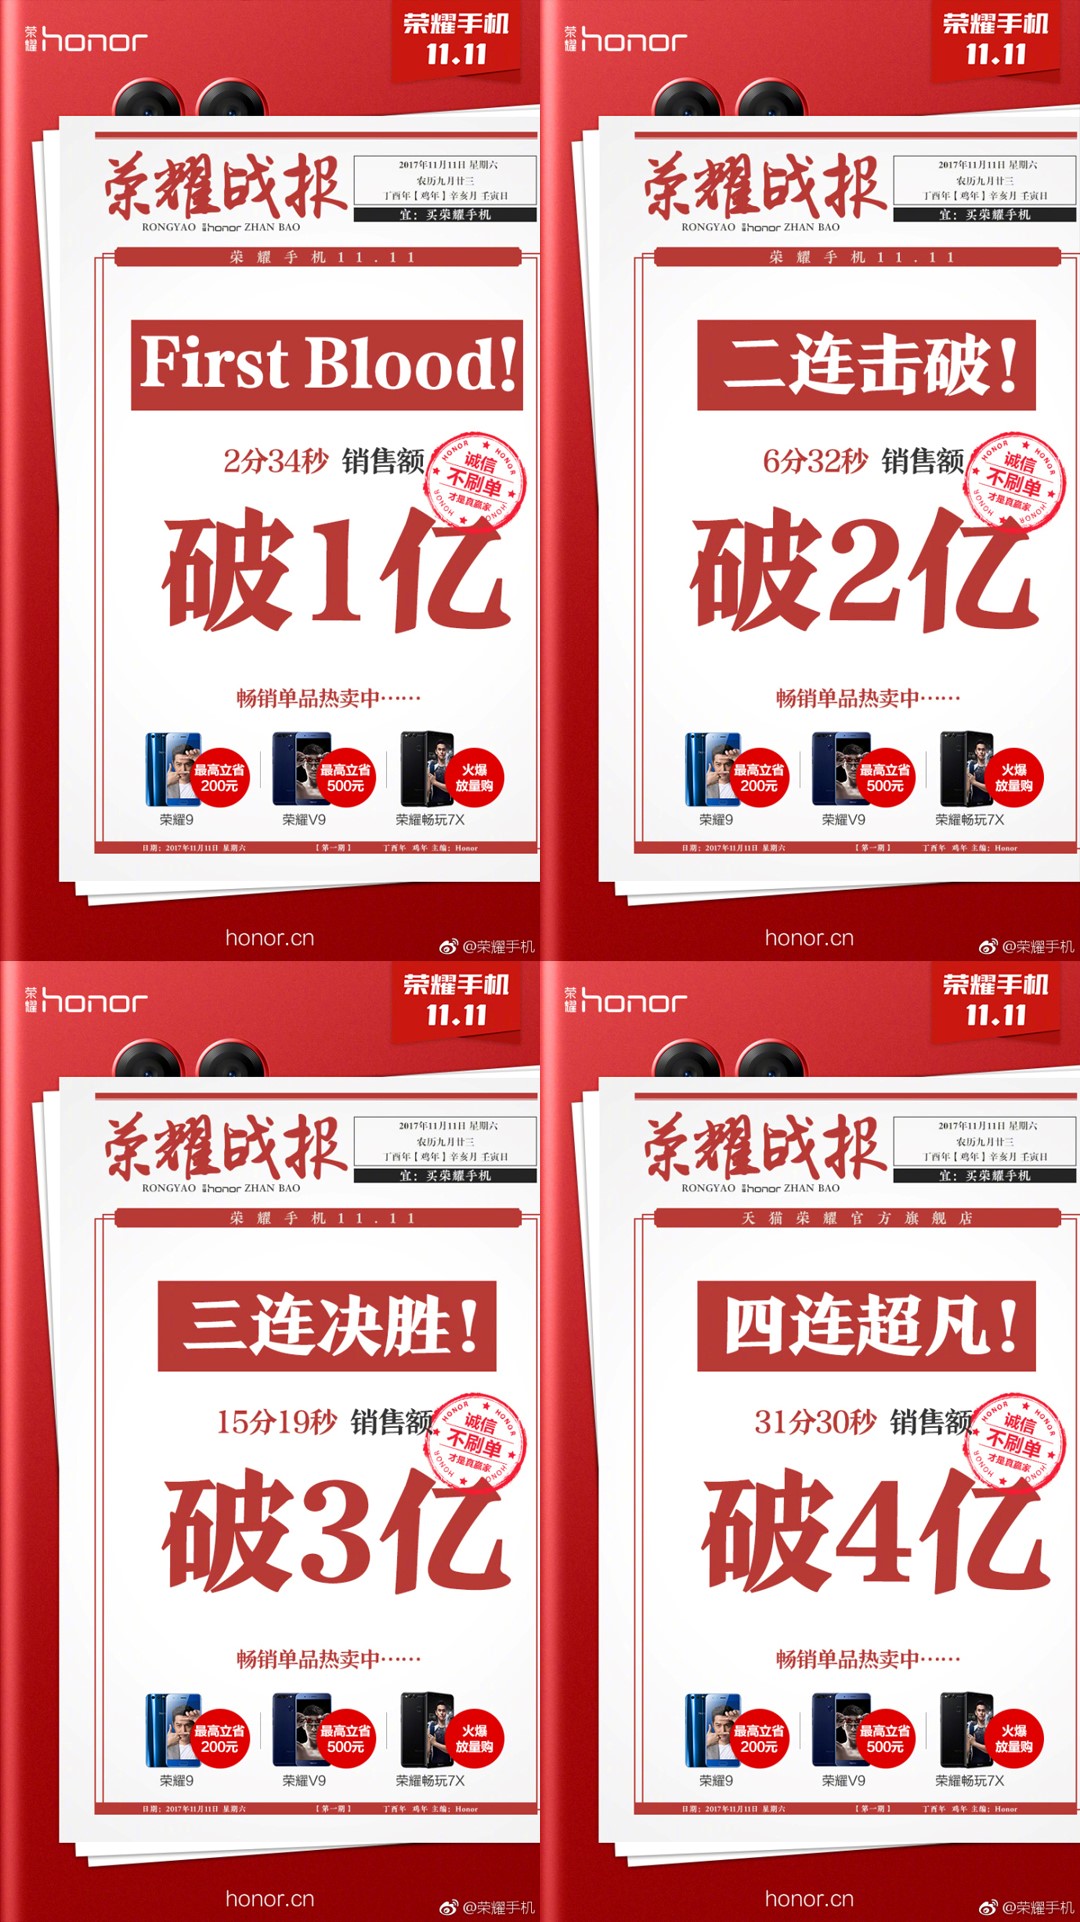 榮耀暢玩7X獲天貓雙11首時段銷售三冠王 科技 第2張